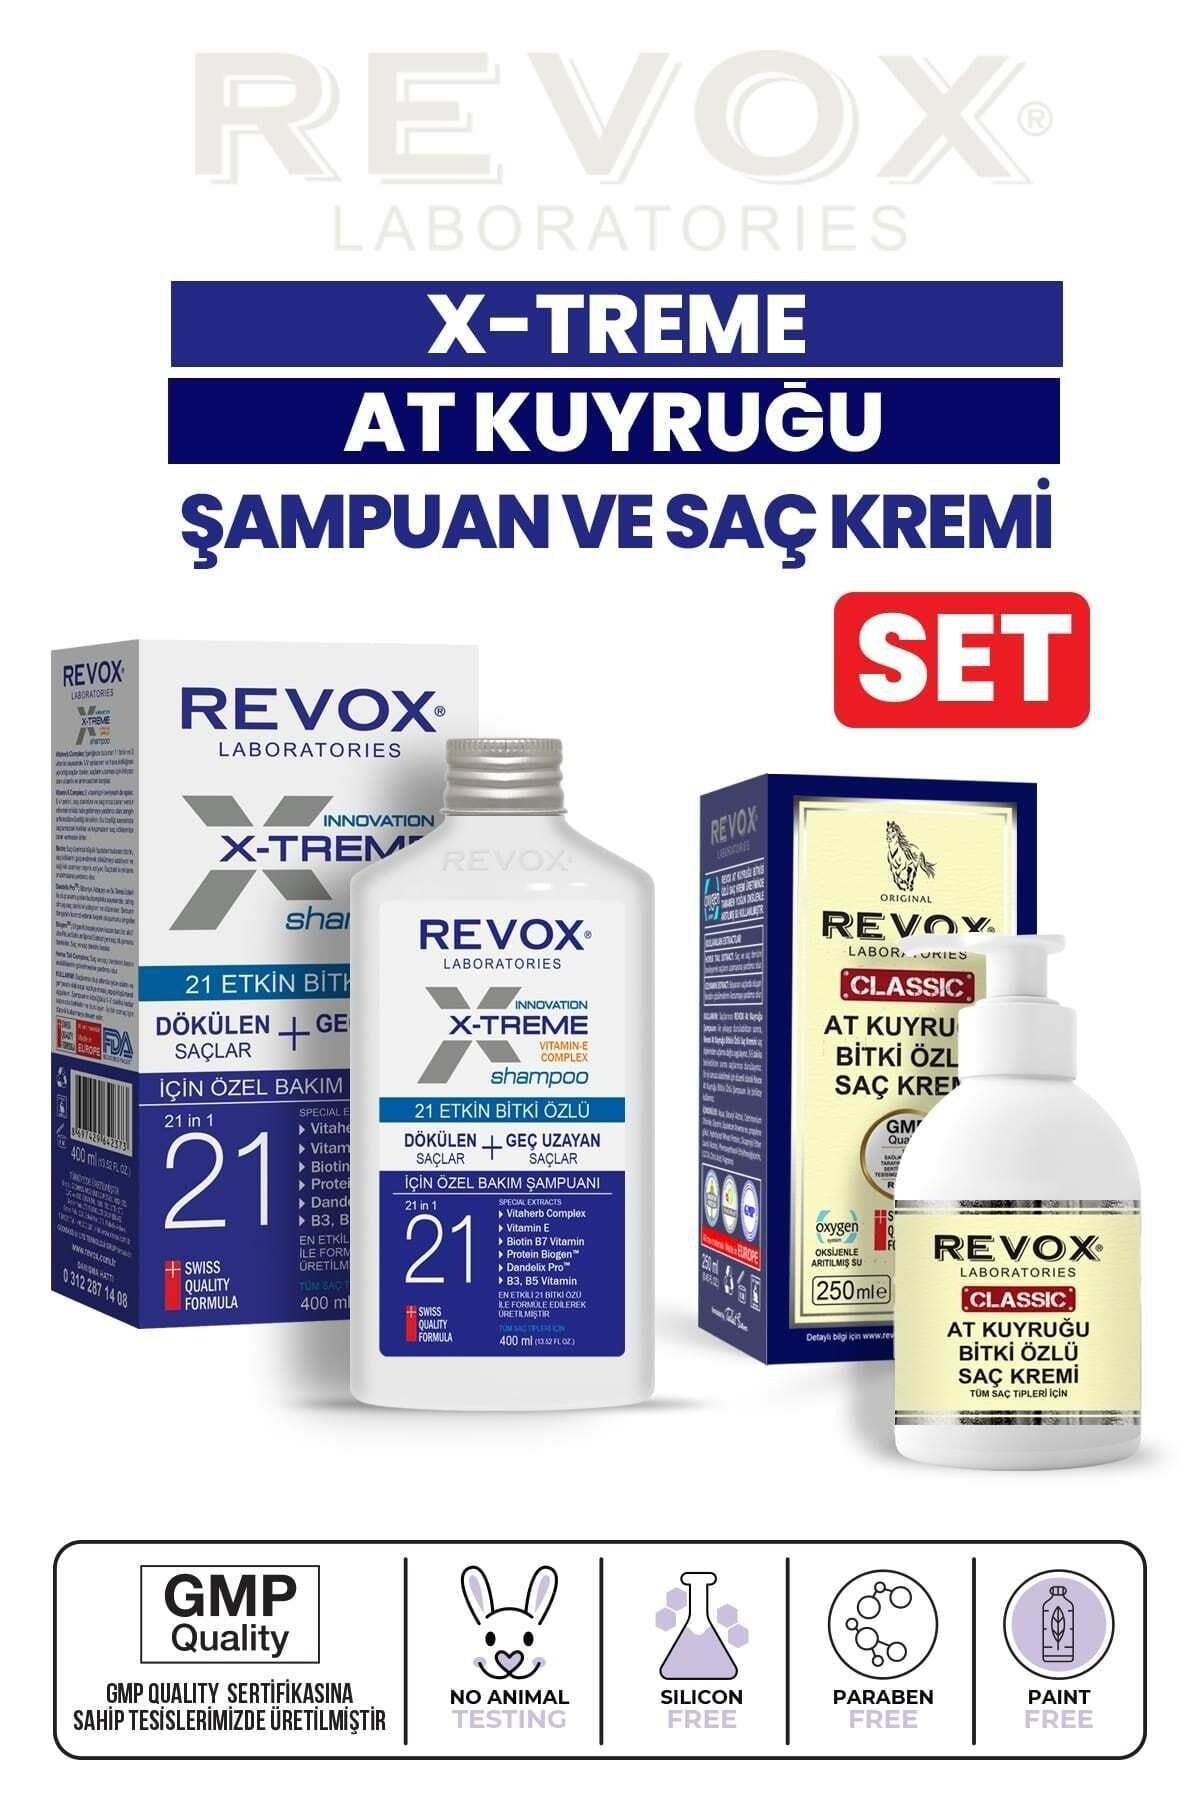 Revox X-treme Dökülen ve Geç Uzayan Saçlara Özel Bakım Şampuanı ve At Kuyruğu Bitki Özlü Saç Kremi